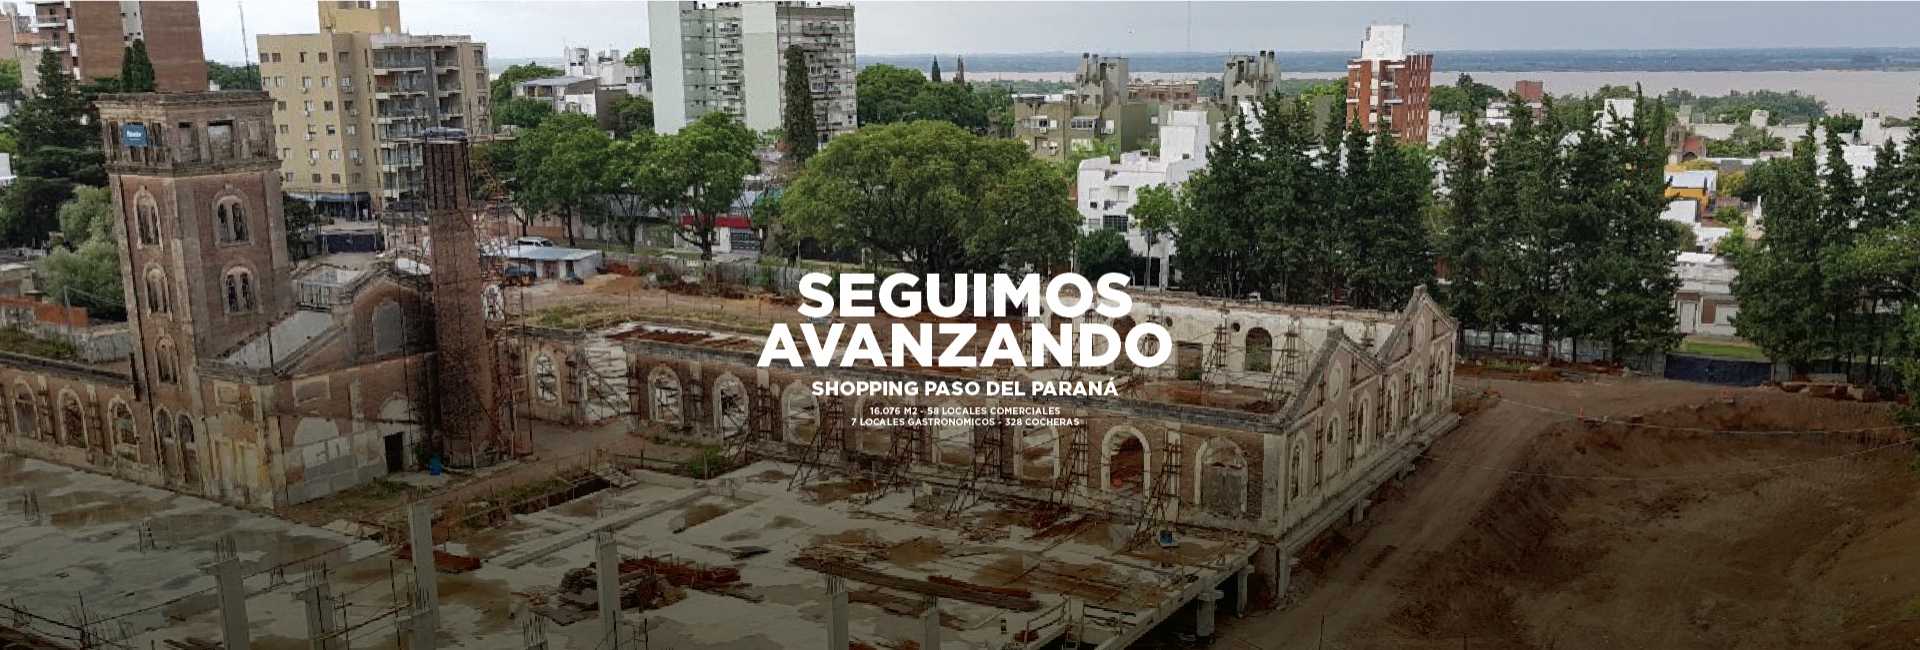 El Shopping Paso del Paraná sigue avanzando.